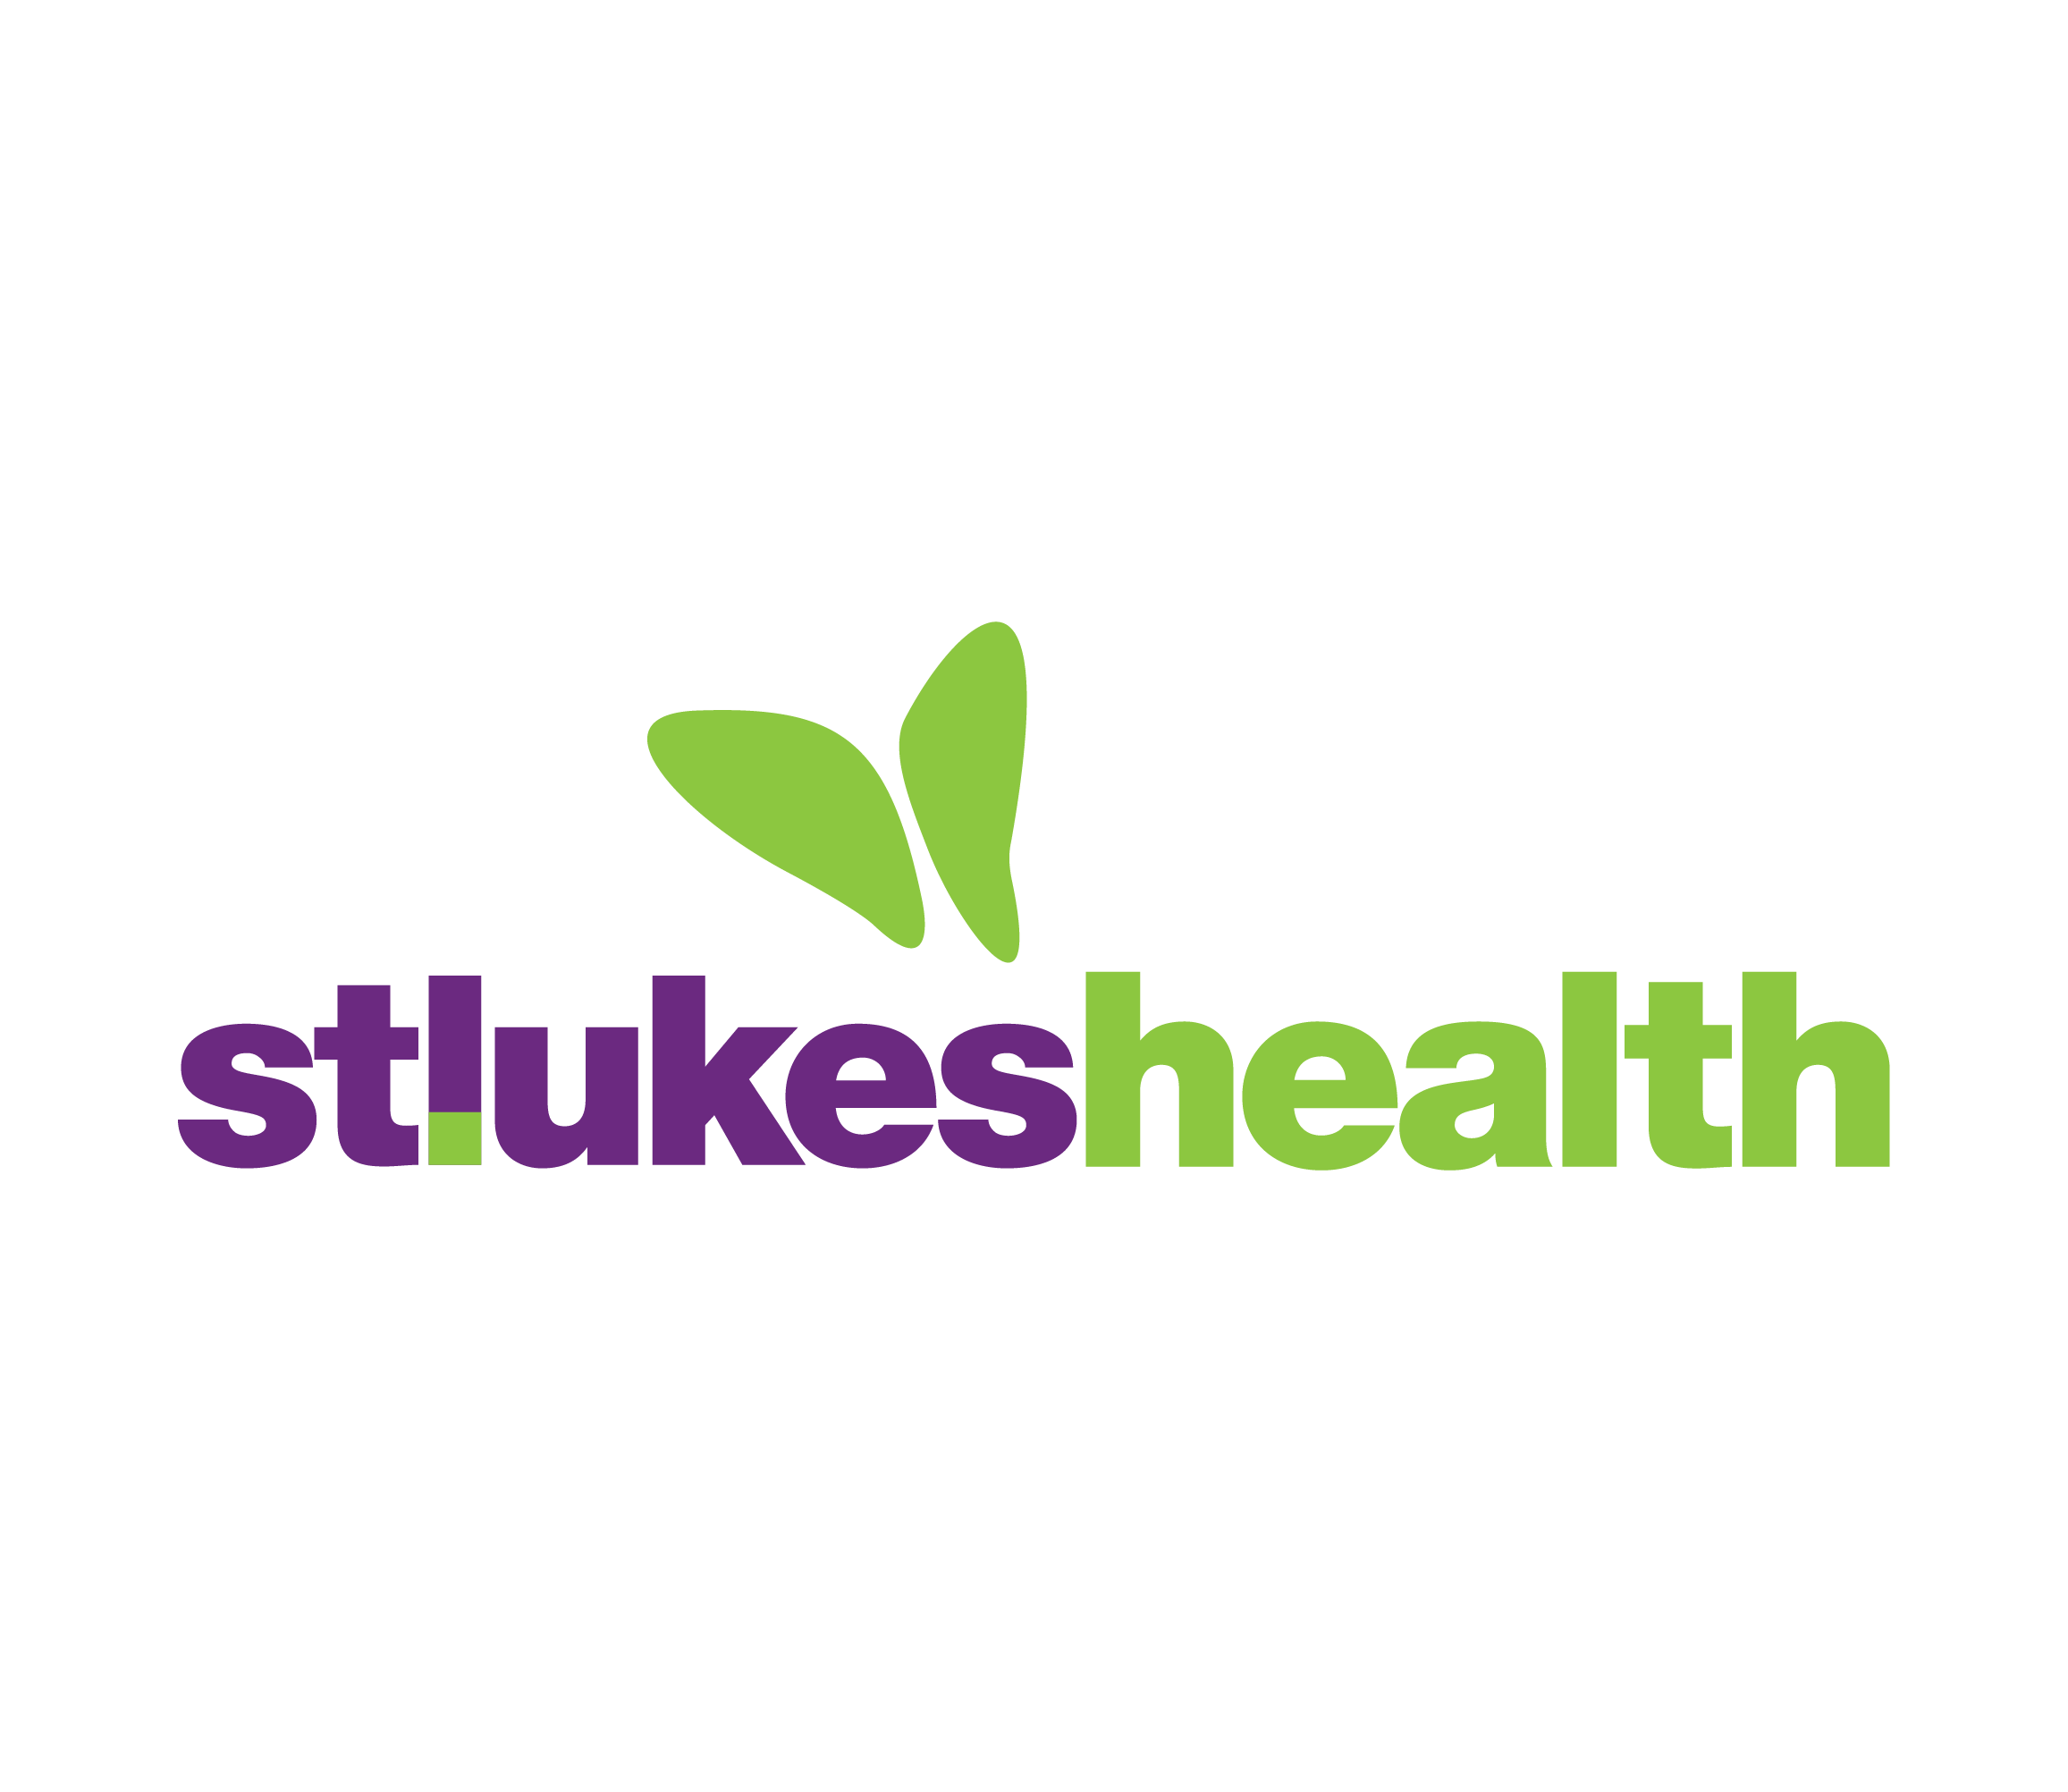 St. Lukes health 